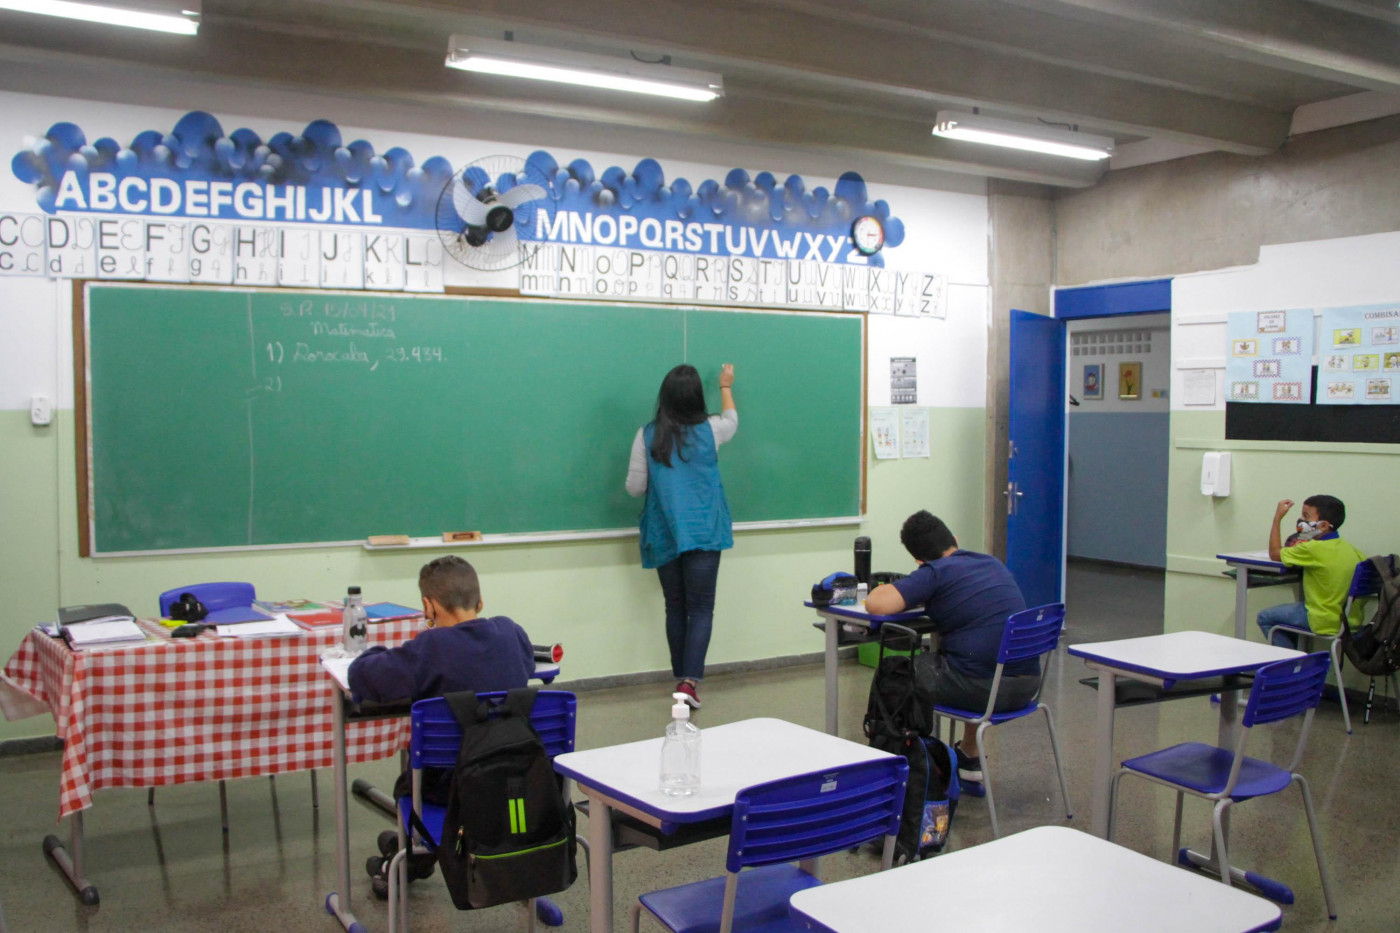 Professora dá aula em sala de aula com poucos alunos no Céu Jaçanã, em São Paulo